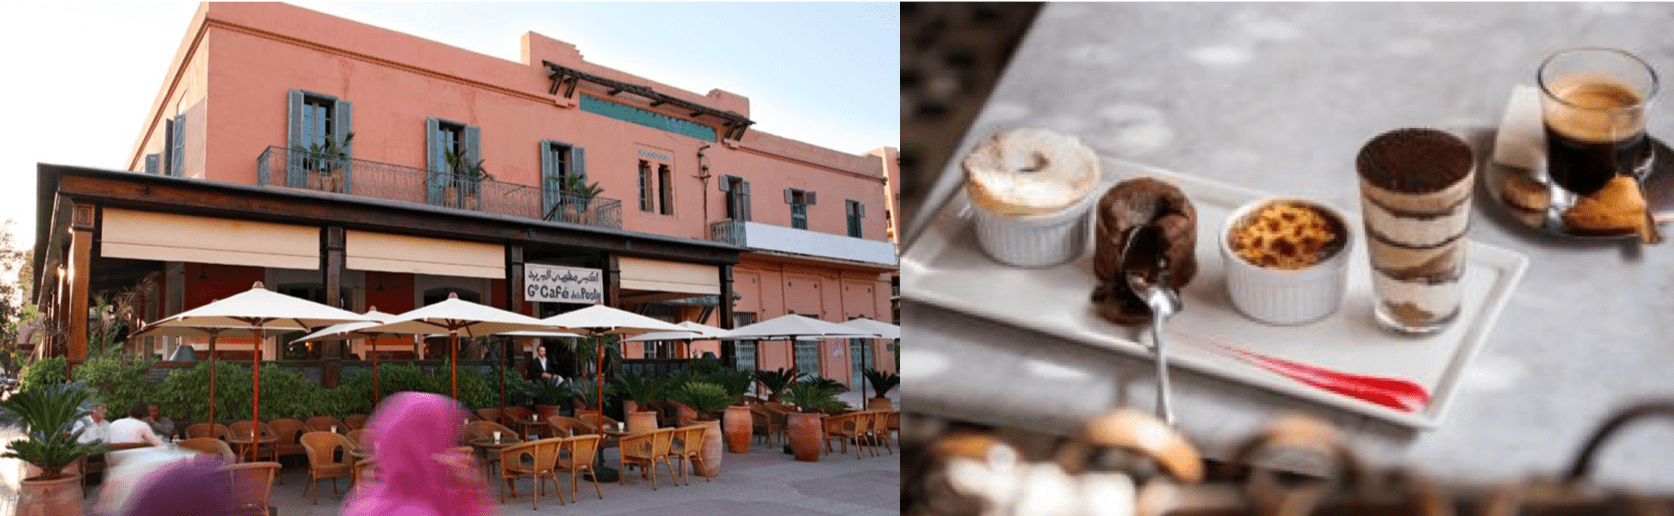 Restaurants Marrakech city trip milkywaysblueyes blog mode